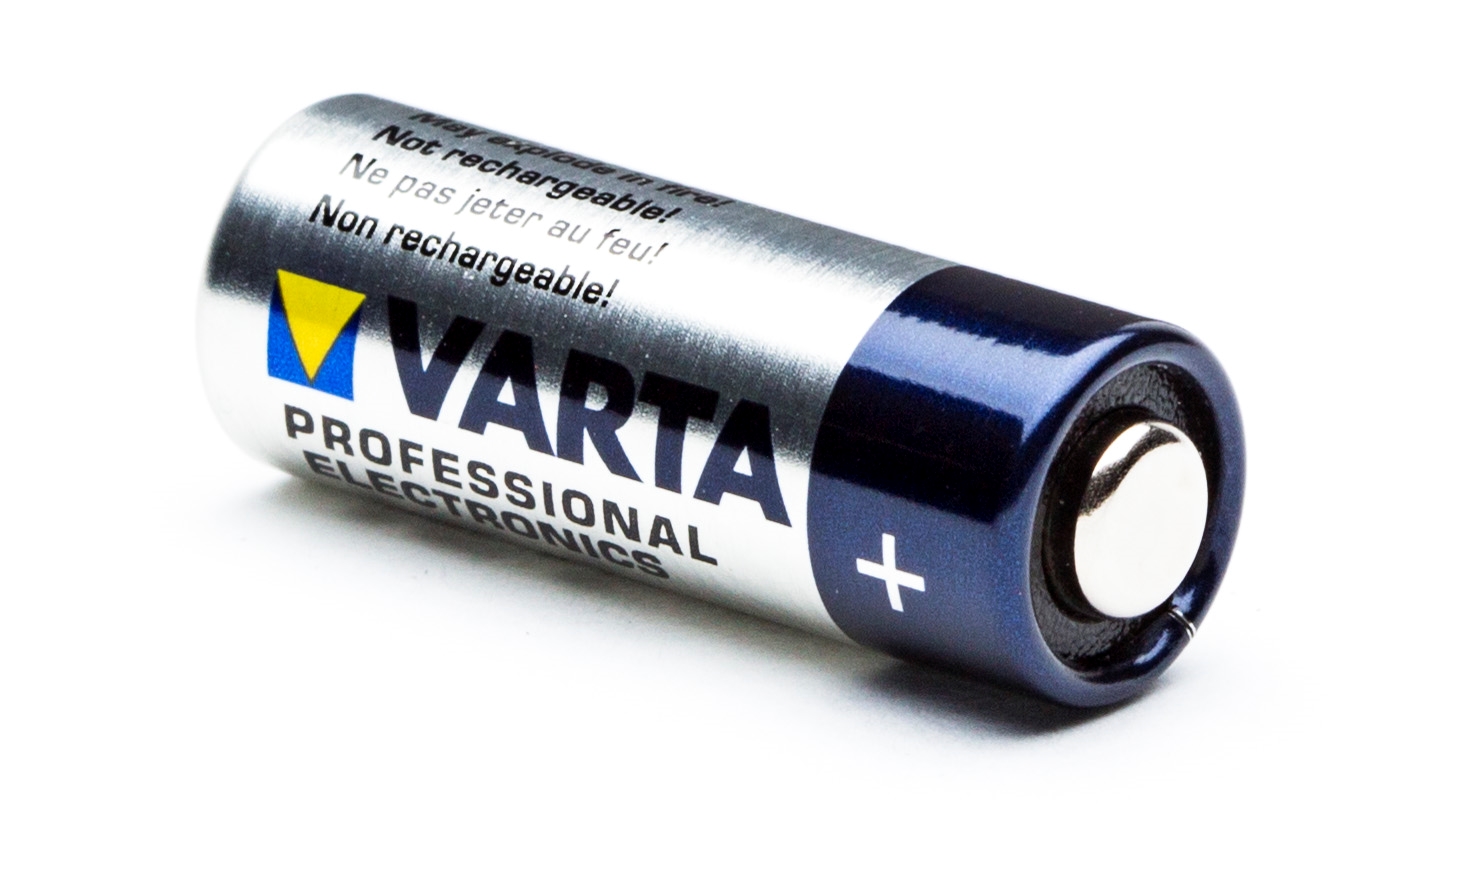 Varta Electronics V23GA 1er Bli acheter à prix réduit